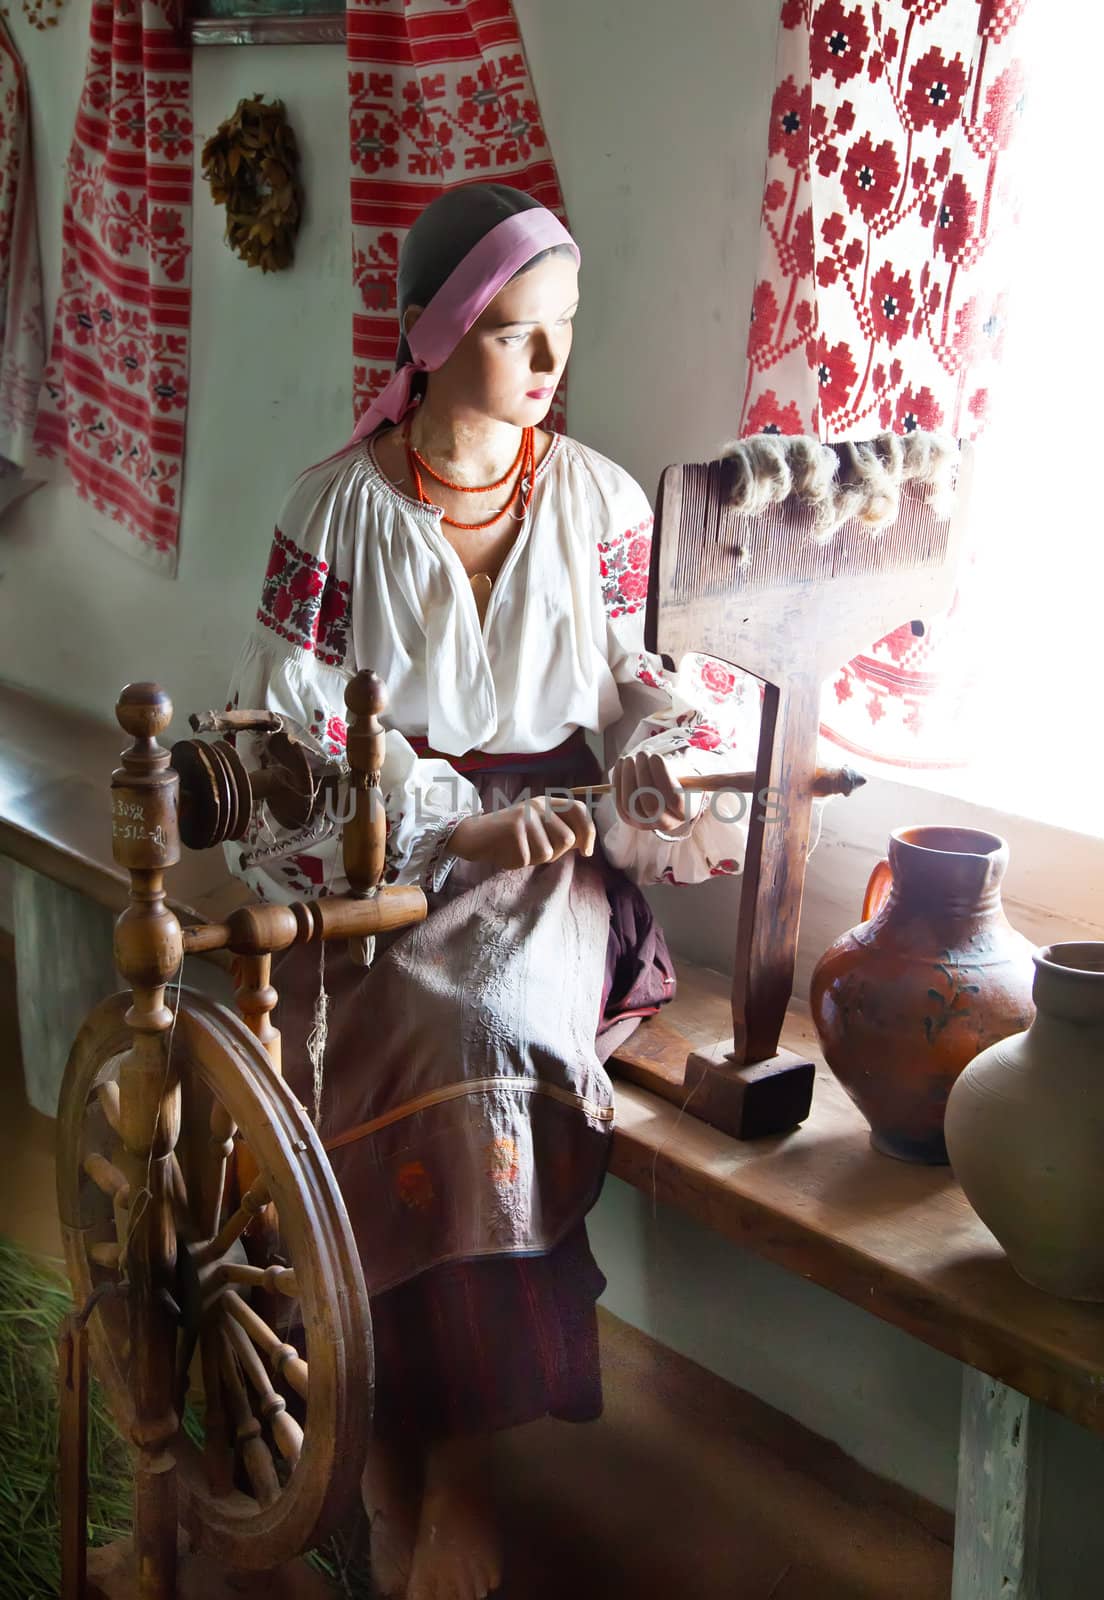 Ukrainian girl waxwork working in traditional interior